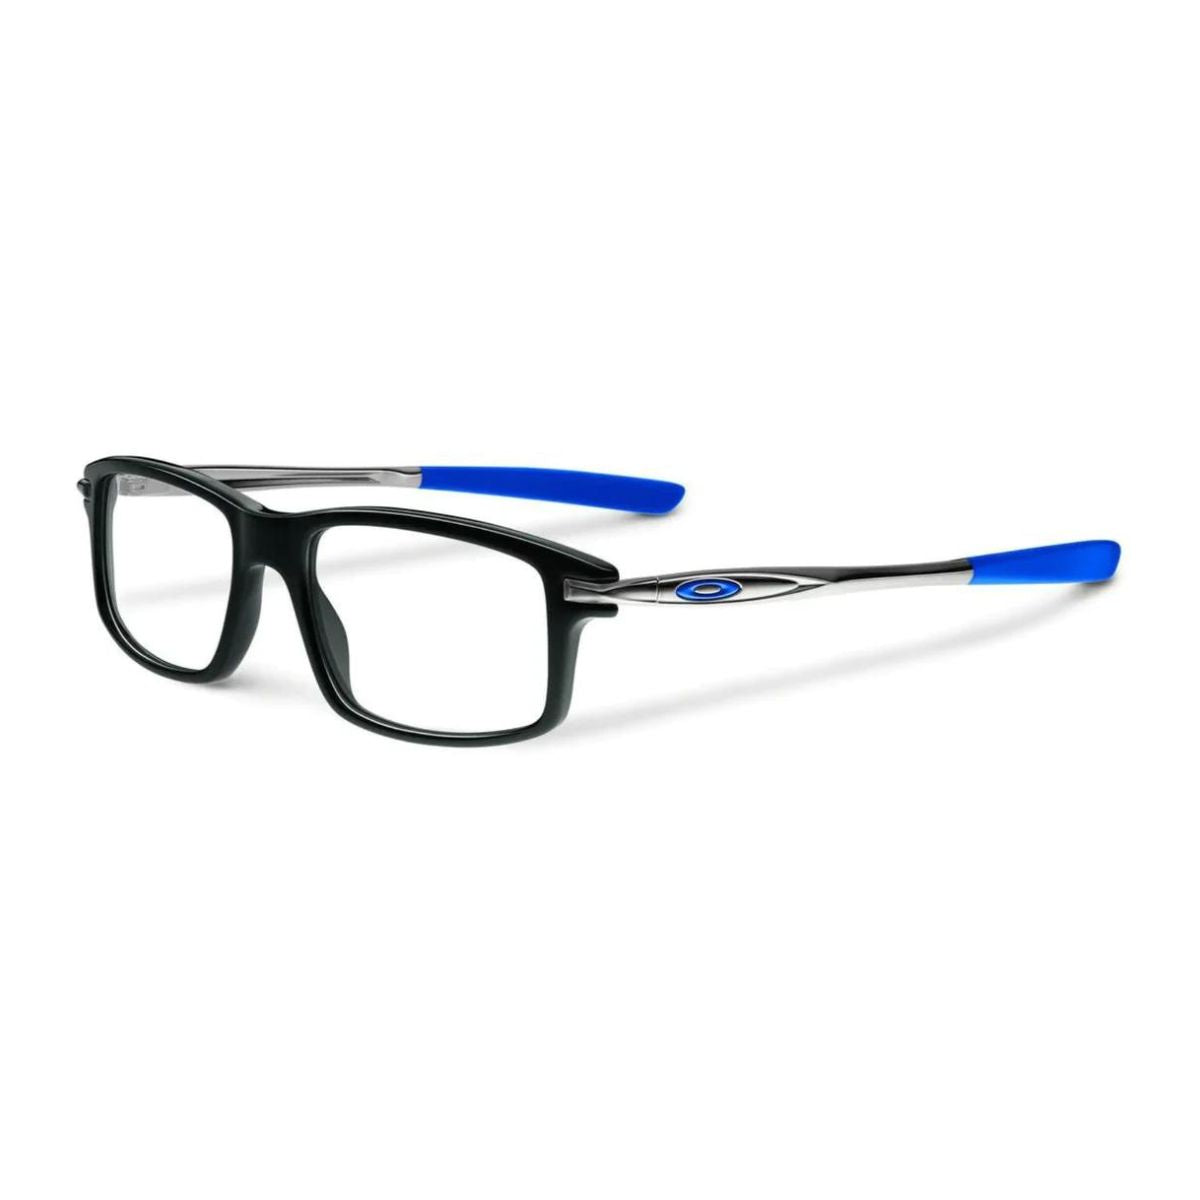 "Oakley 1100 0453 prescription eyeglasses frame for men's at optorium"